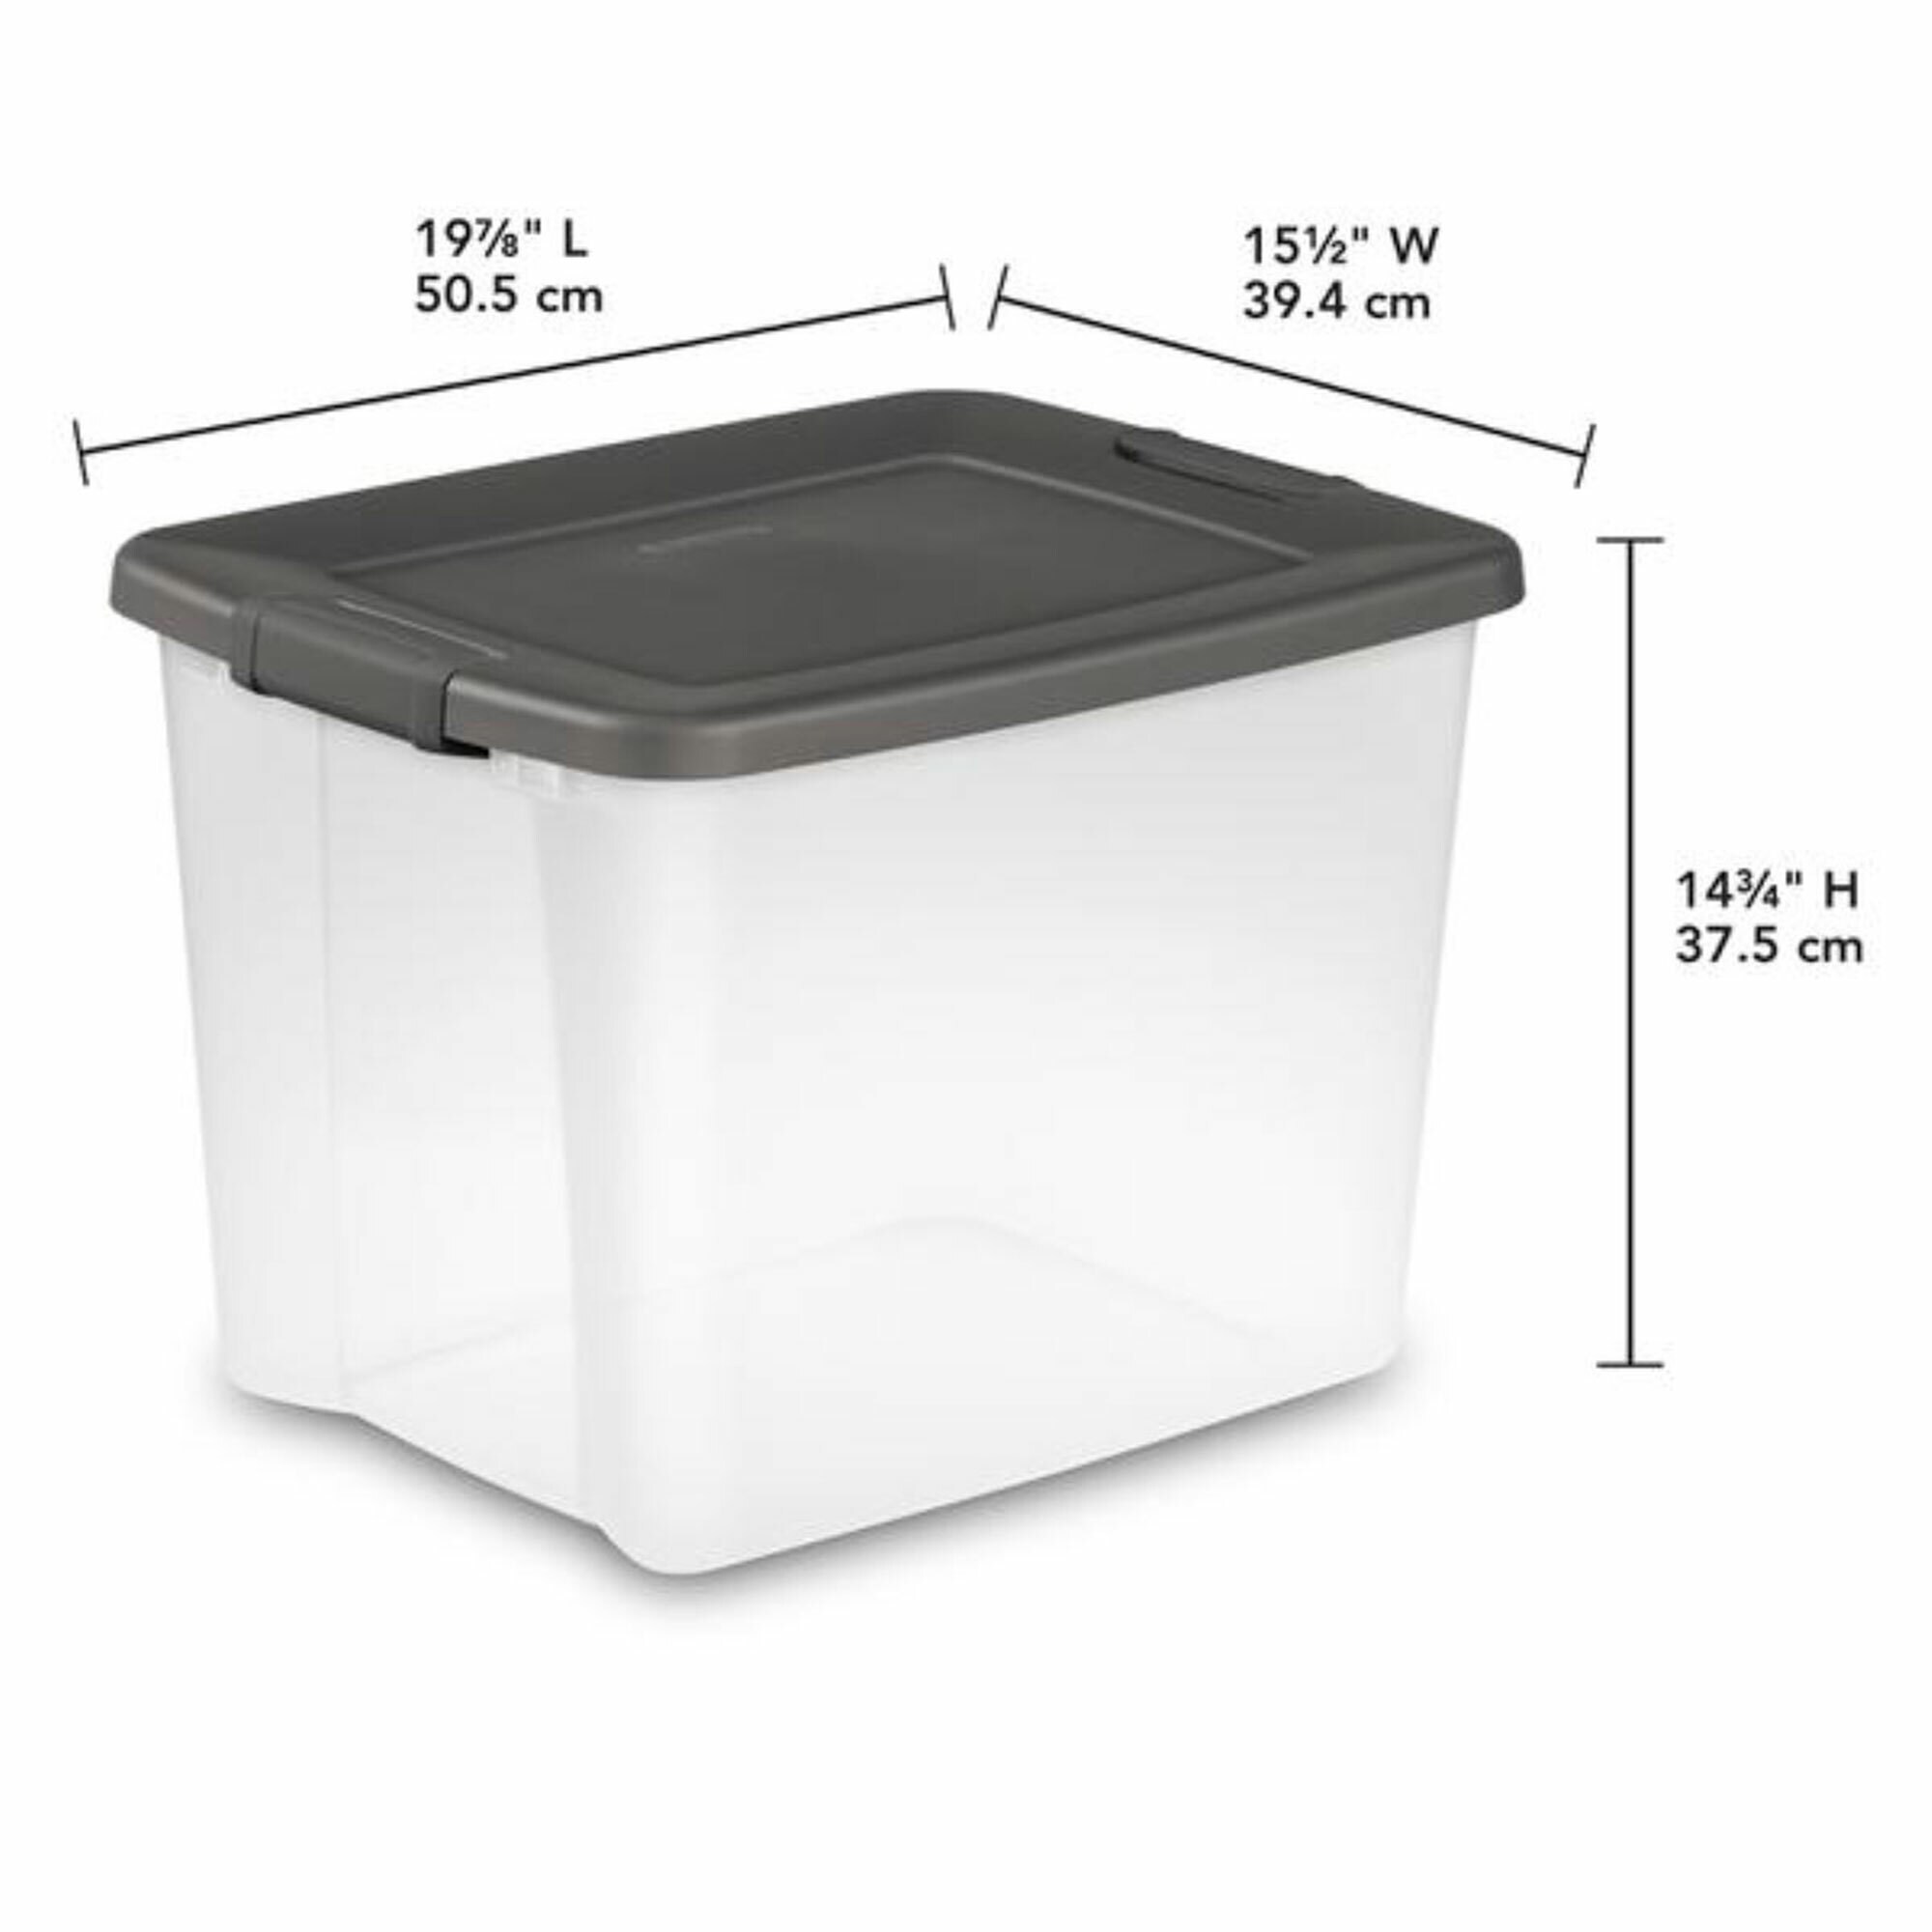 5 Square Medium Cookie Container - 50/Pack